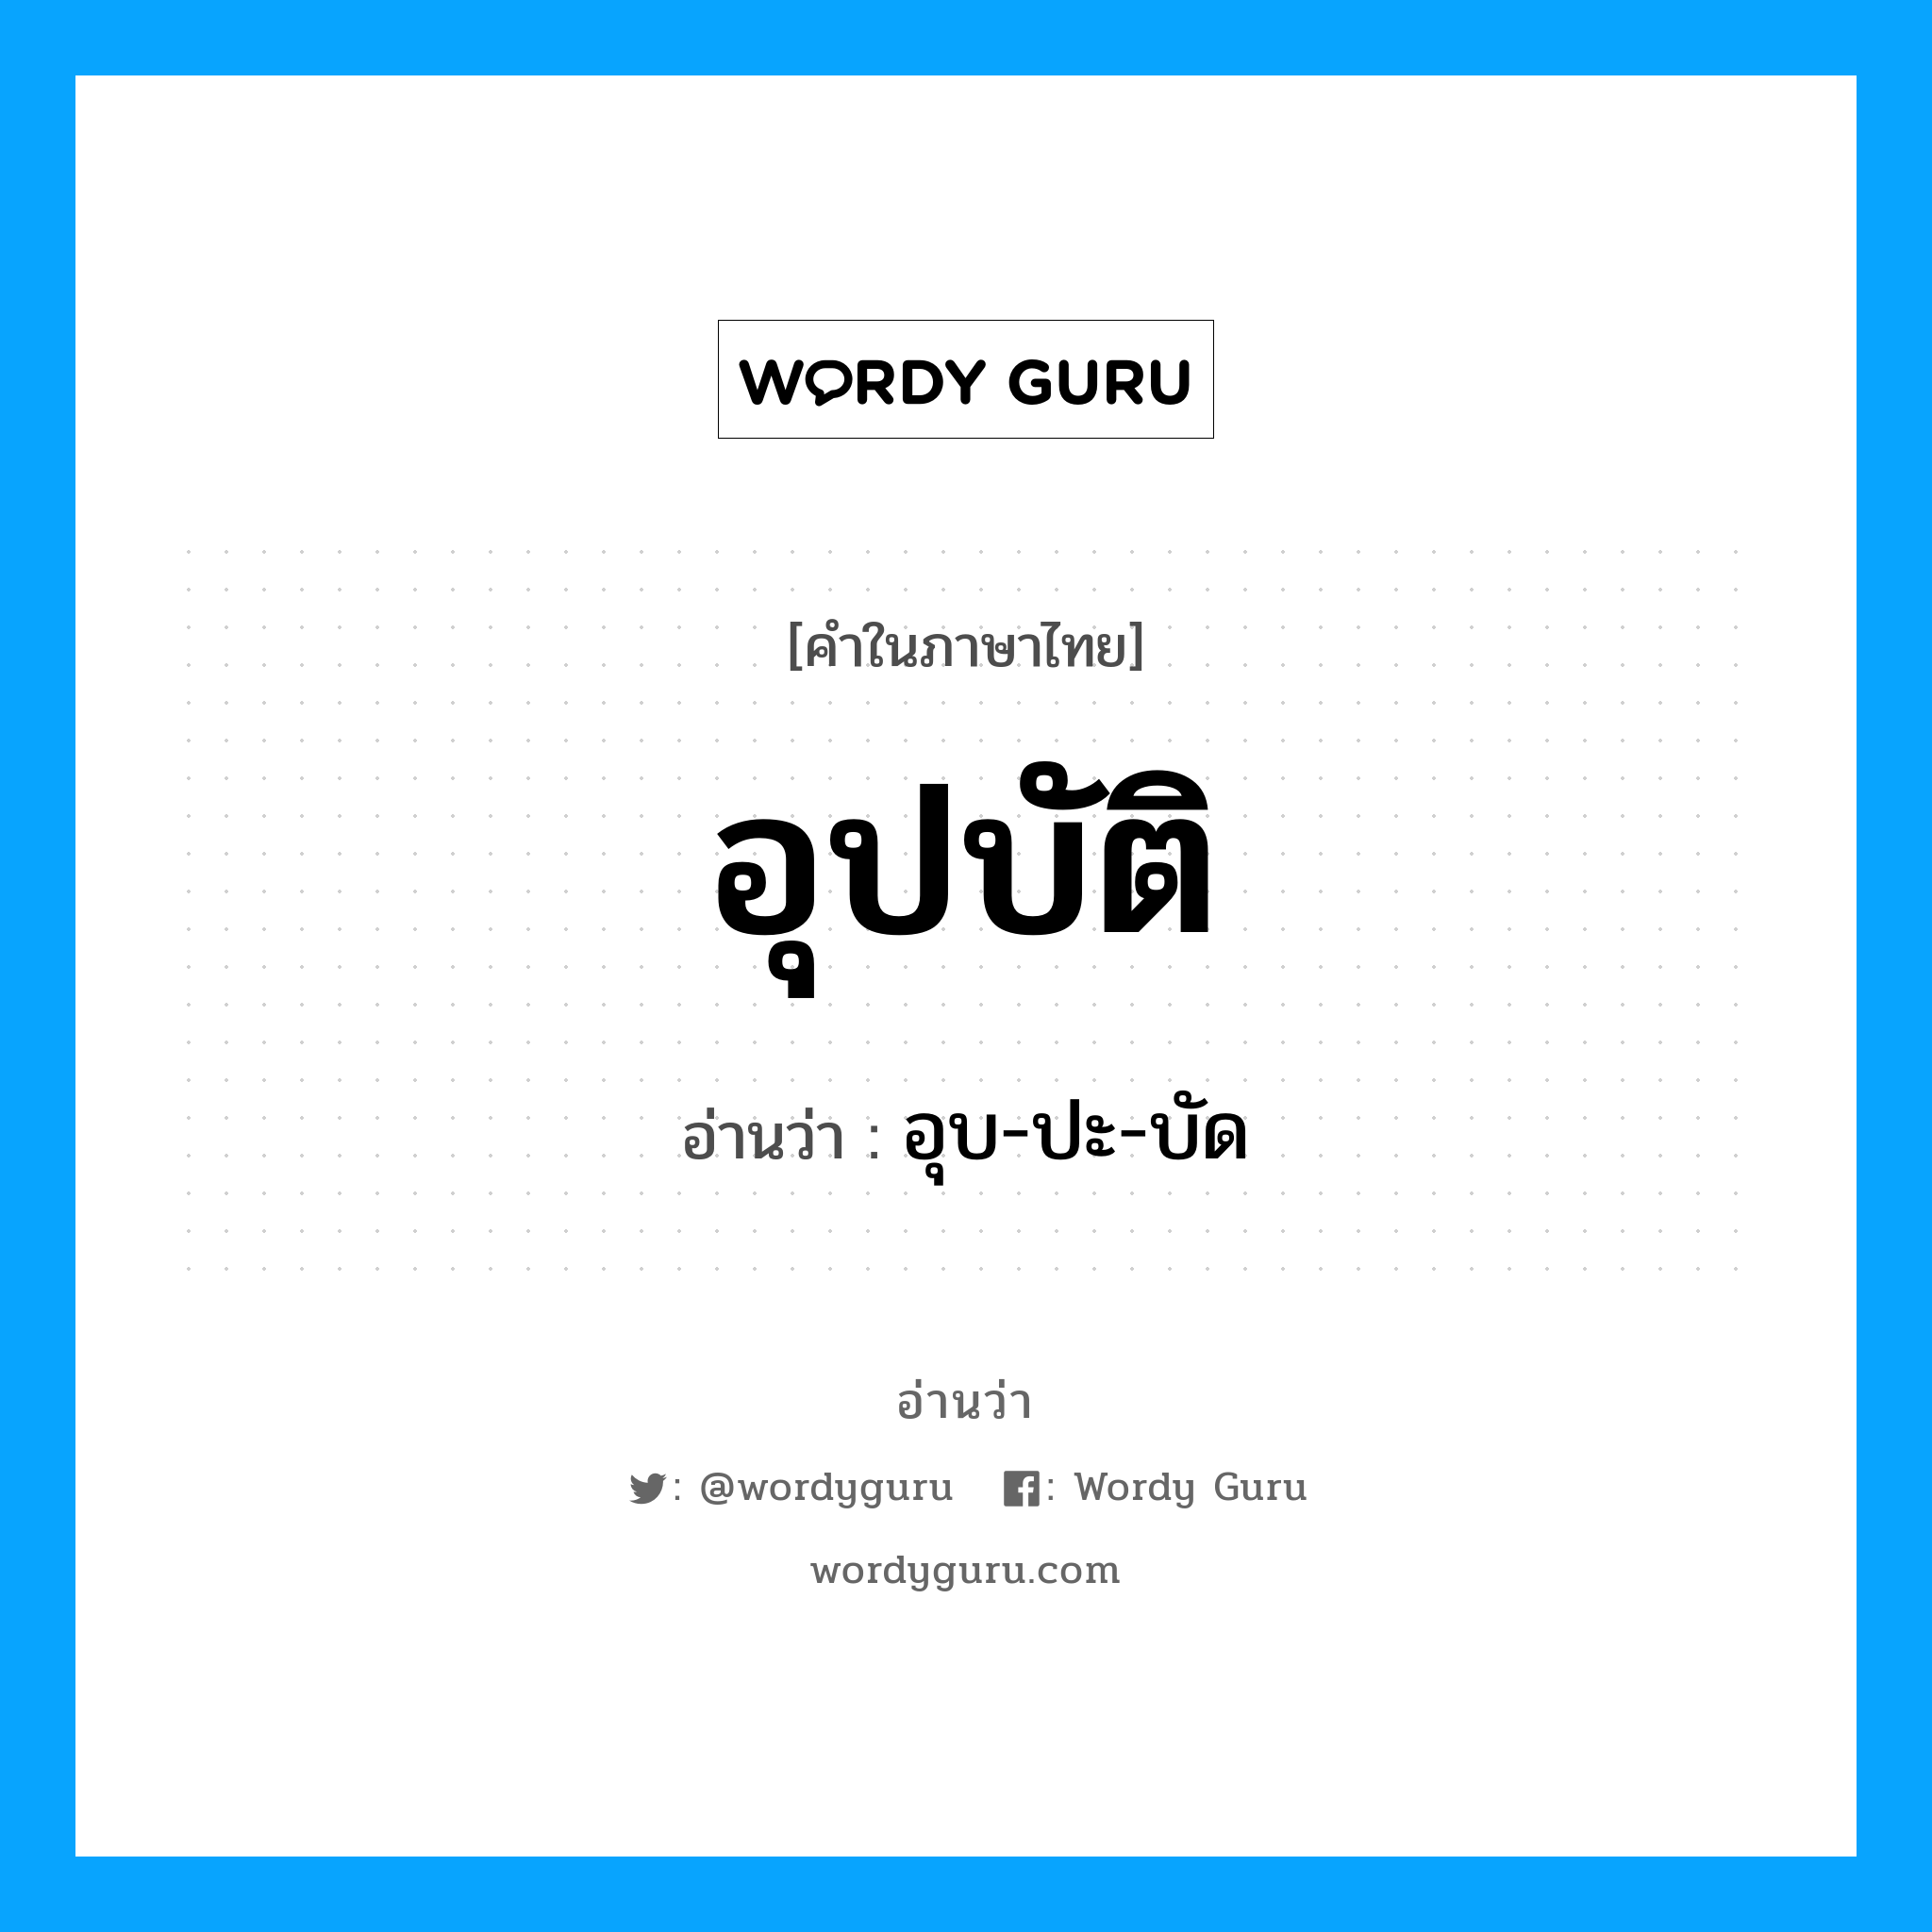 อุบ-ปะ-บัด เป็นคำอ่านของคำไหน?, คำในภาษาไทย อุบ-ปะ-บัด อ่านว่า อุปบัติ